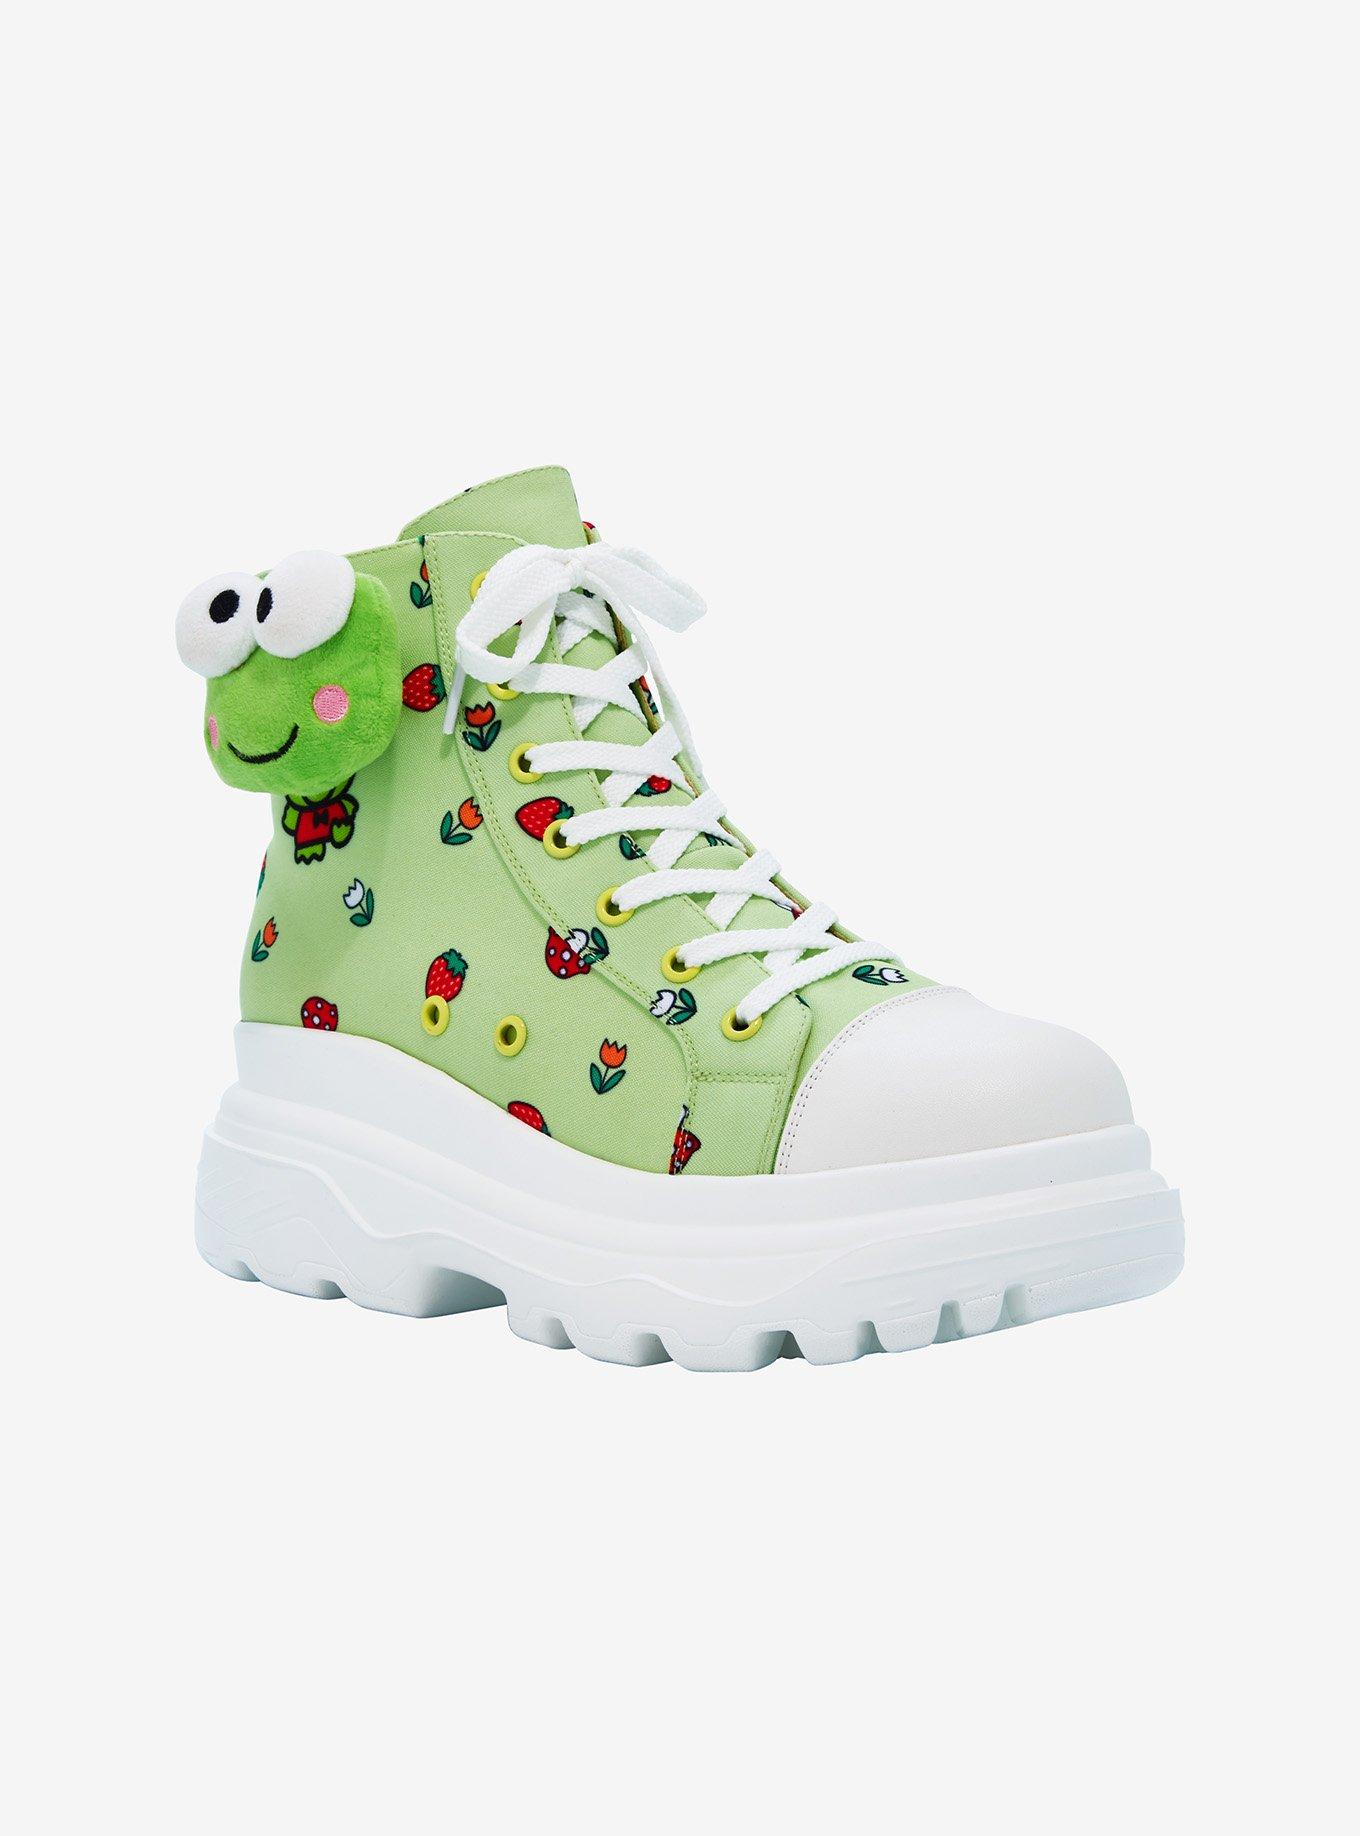 Keroppi Mushroom Platform Hi-Top Sneakers, MULTI, alternate